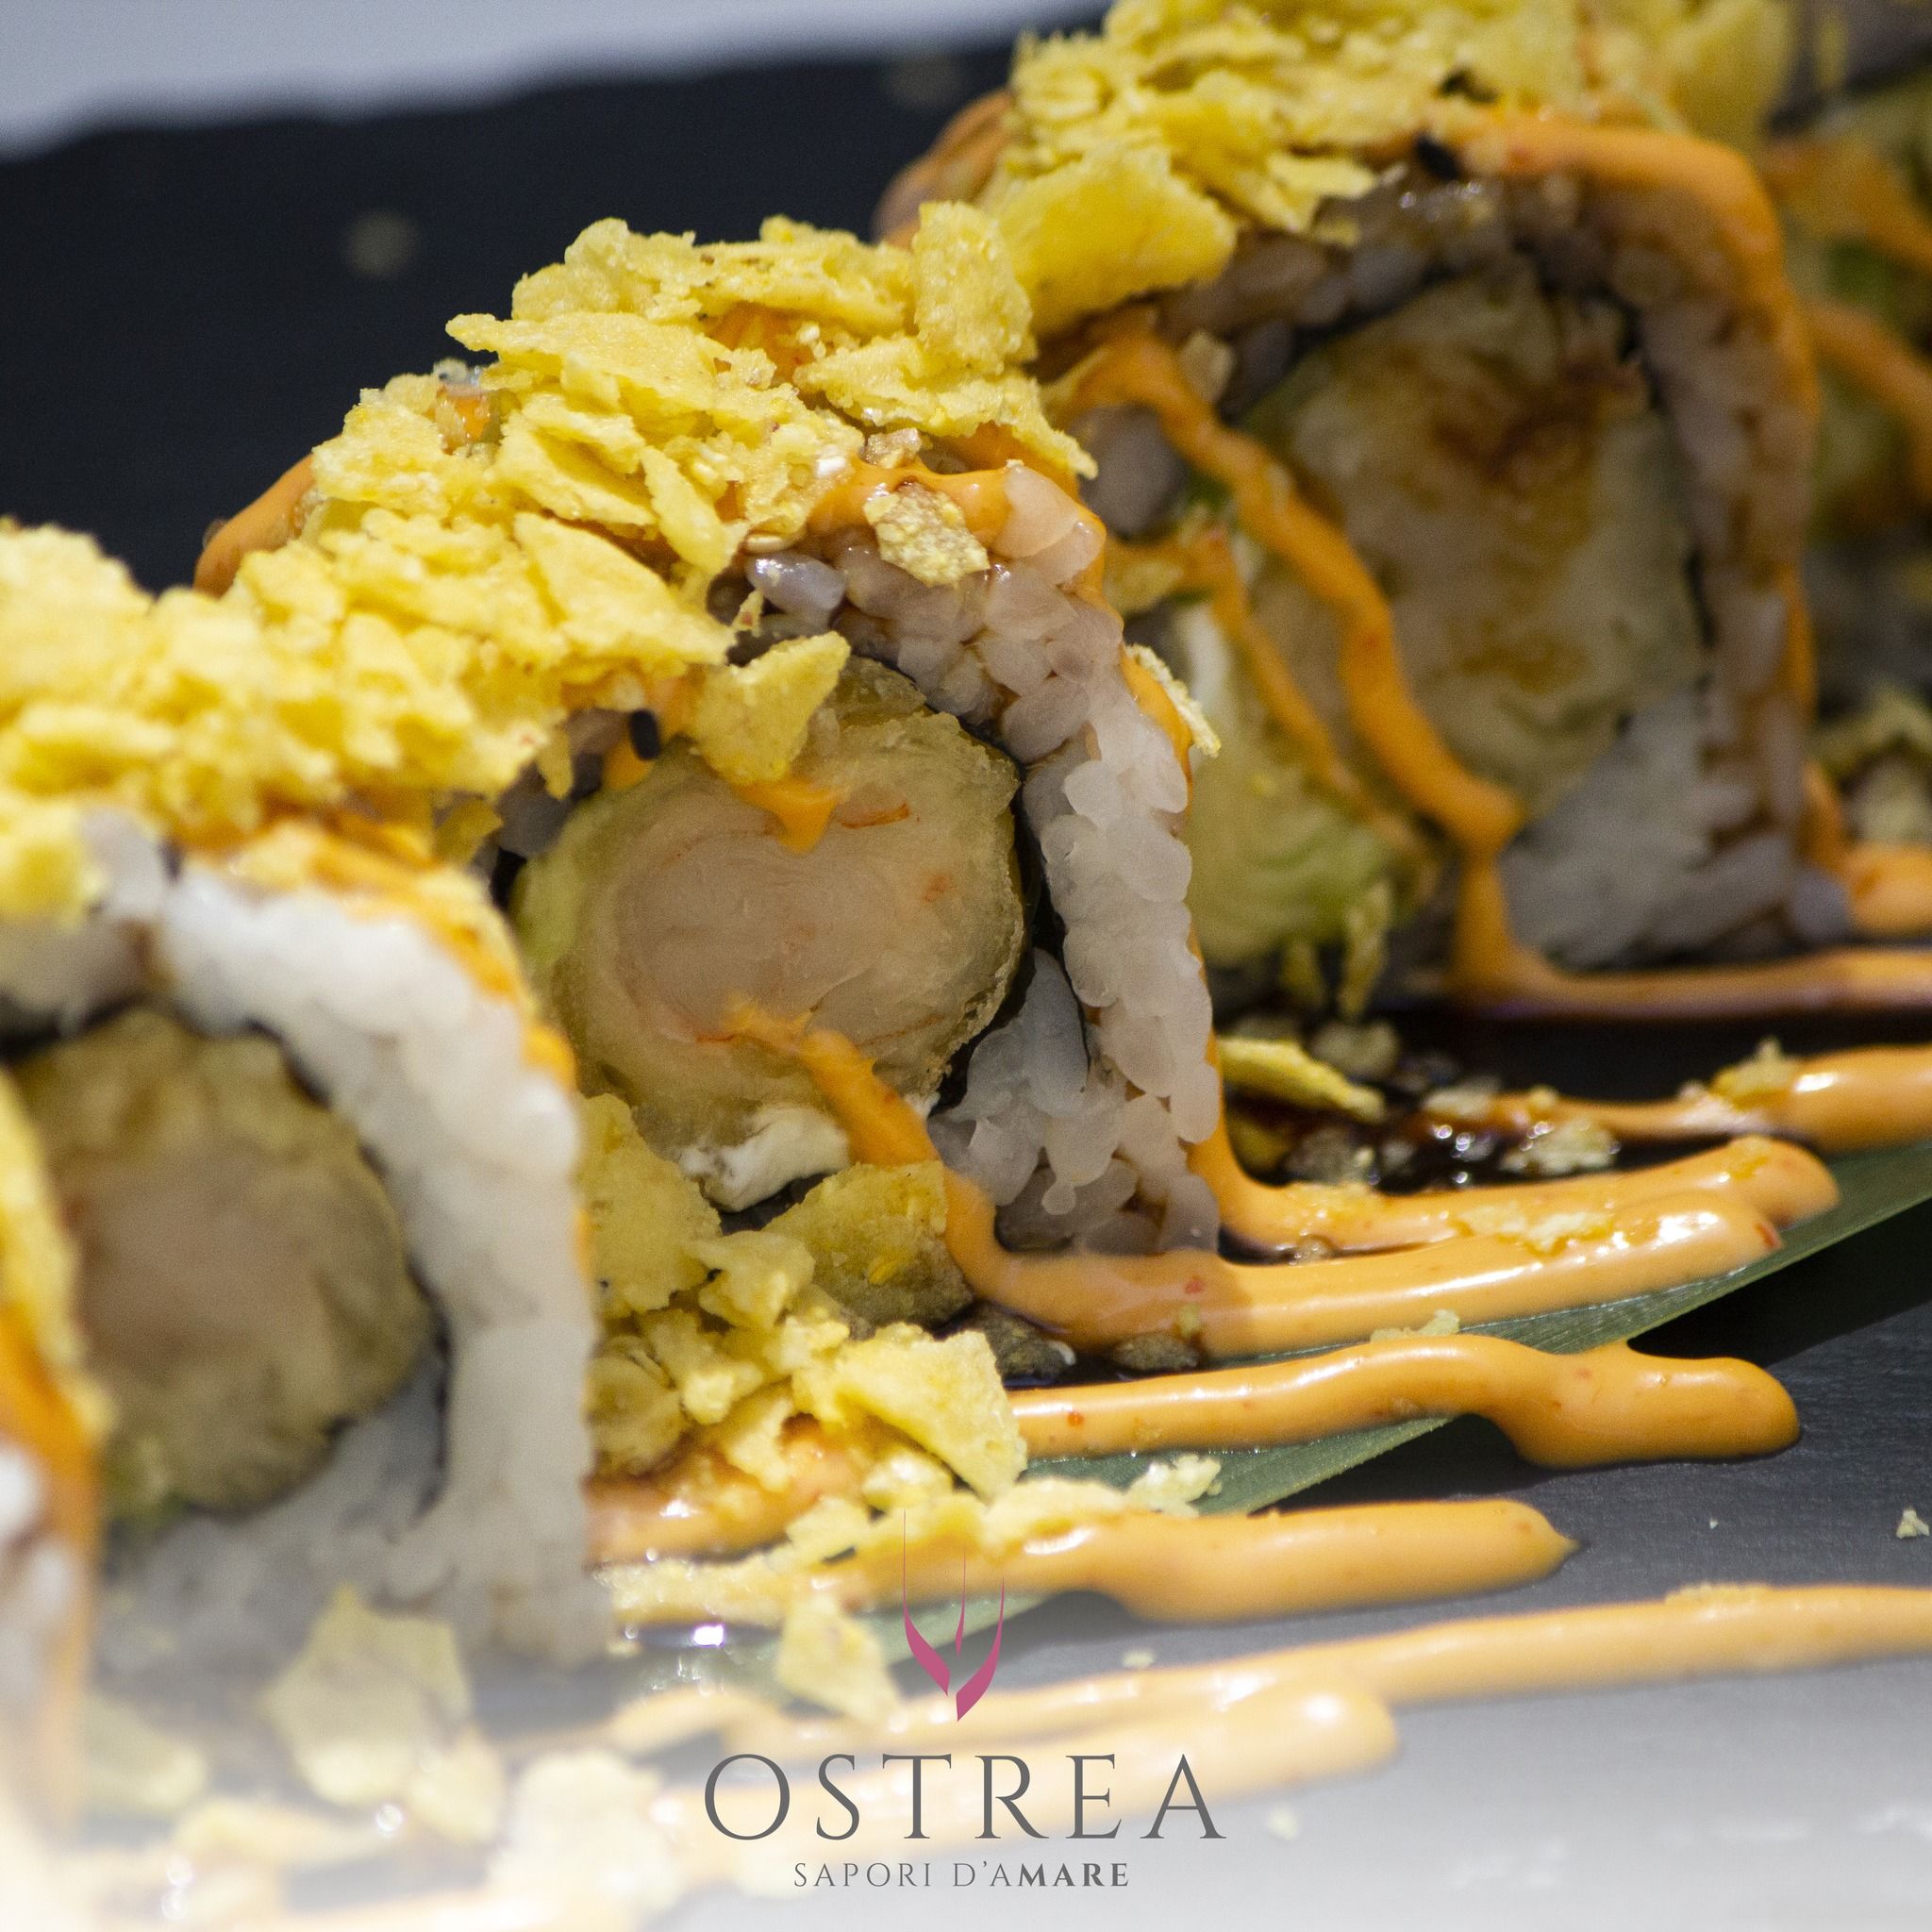 Ostrea: barchette con a bordo dell'ottimo sushi. Tutti i giorni aperitivo e cena